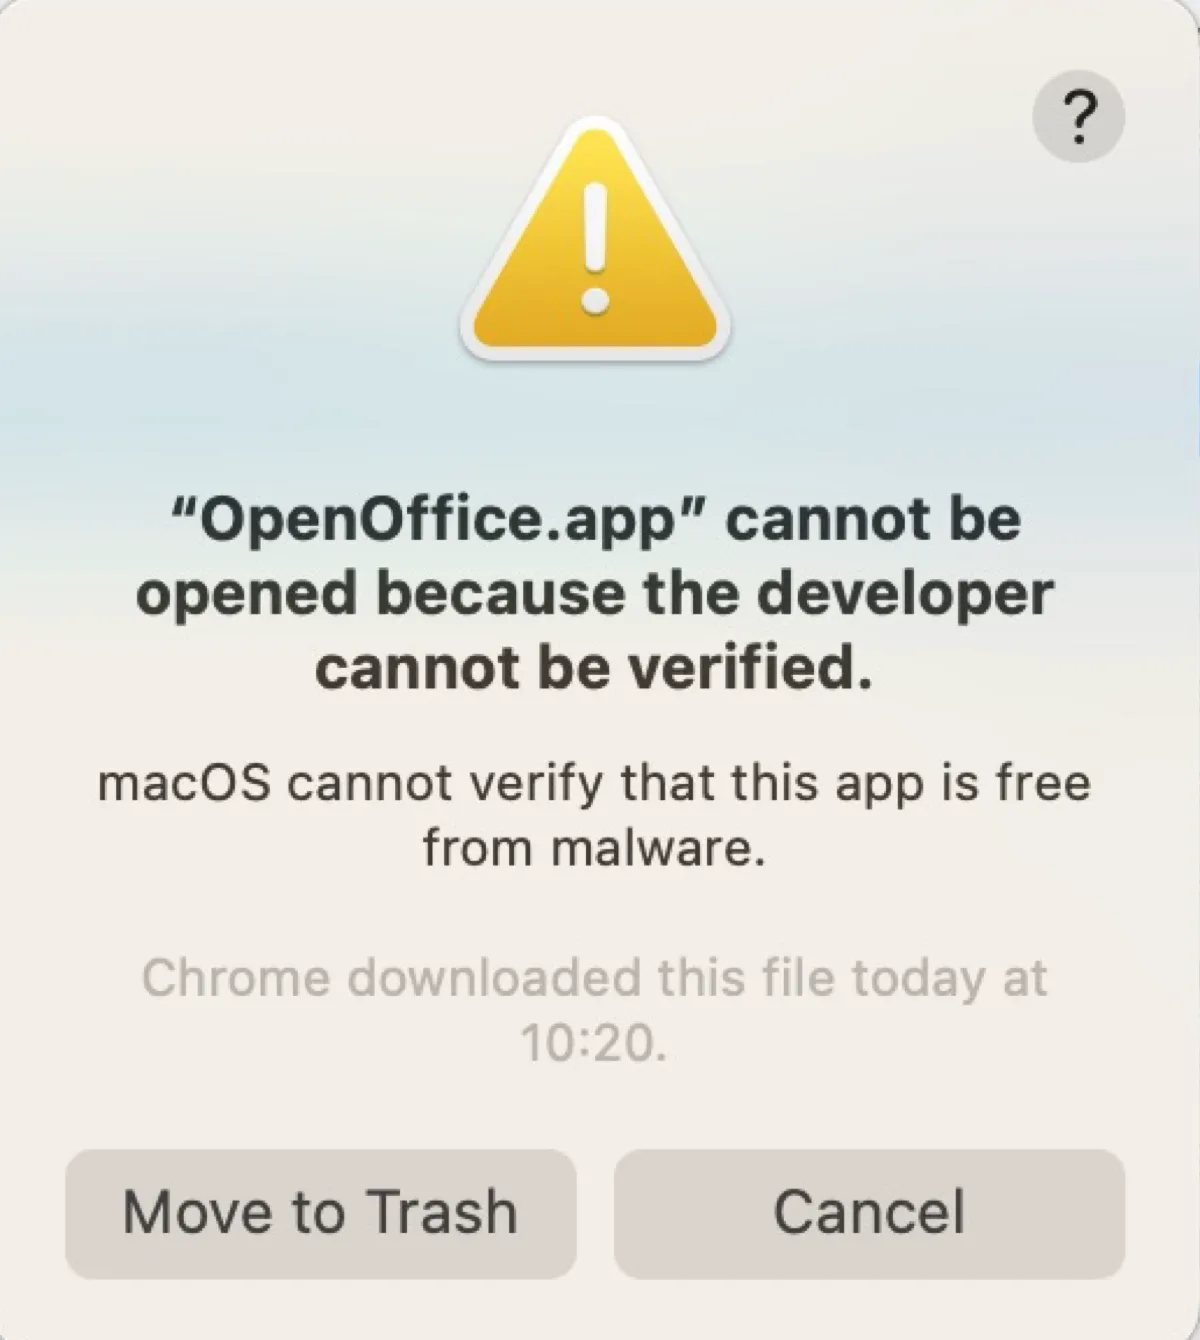 開発元が検証できないため、アプリが開けないというエラー